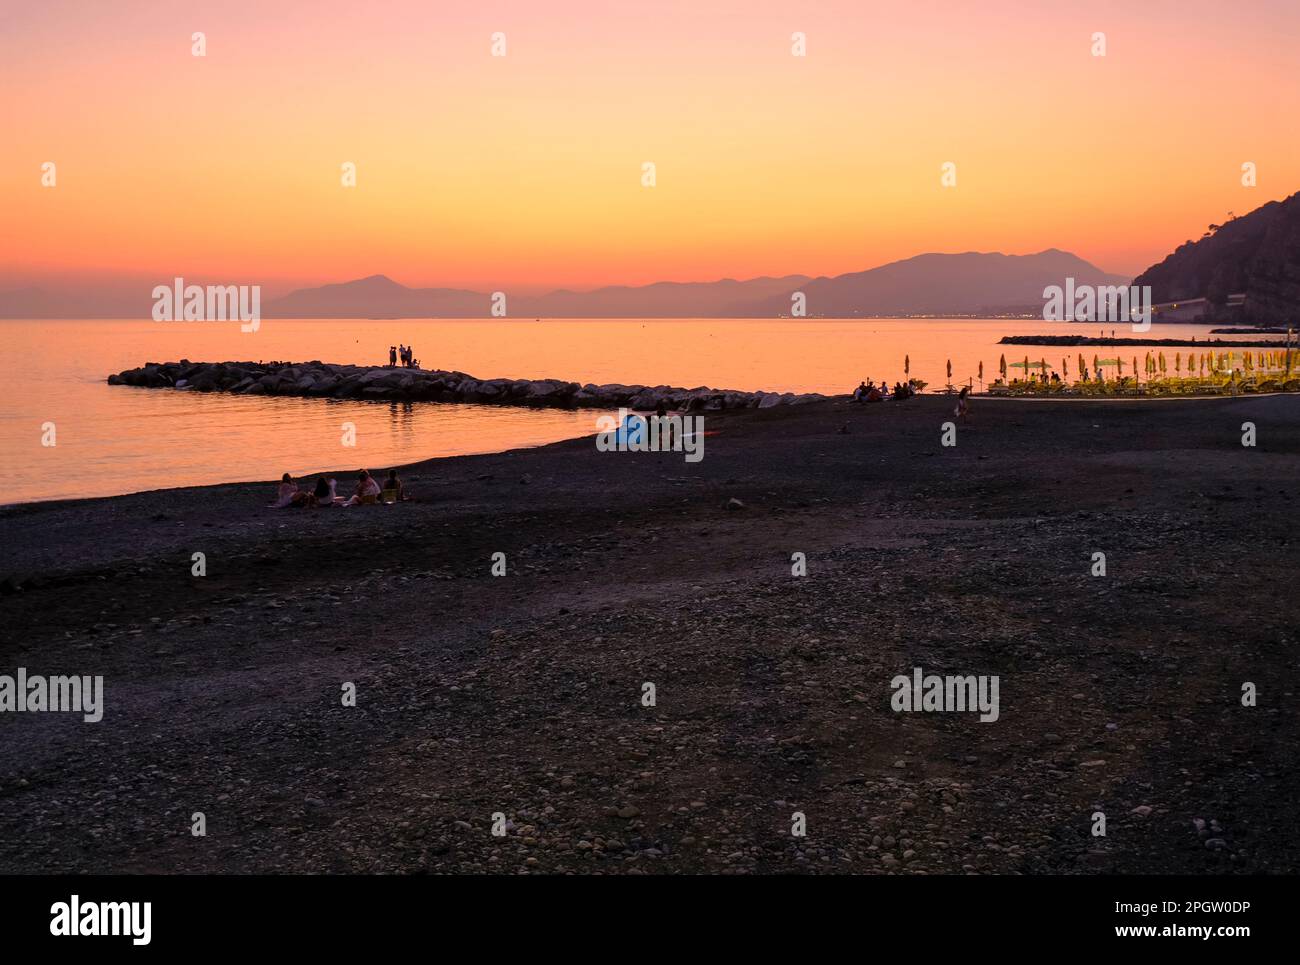 coucher de soleil sur la plage avec chaises longues jaunes sur la mer et l'horizon et collines avec les hôtels. Sestri Levante, Ligurie, Italie Banque D'Images